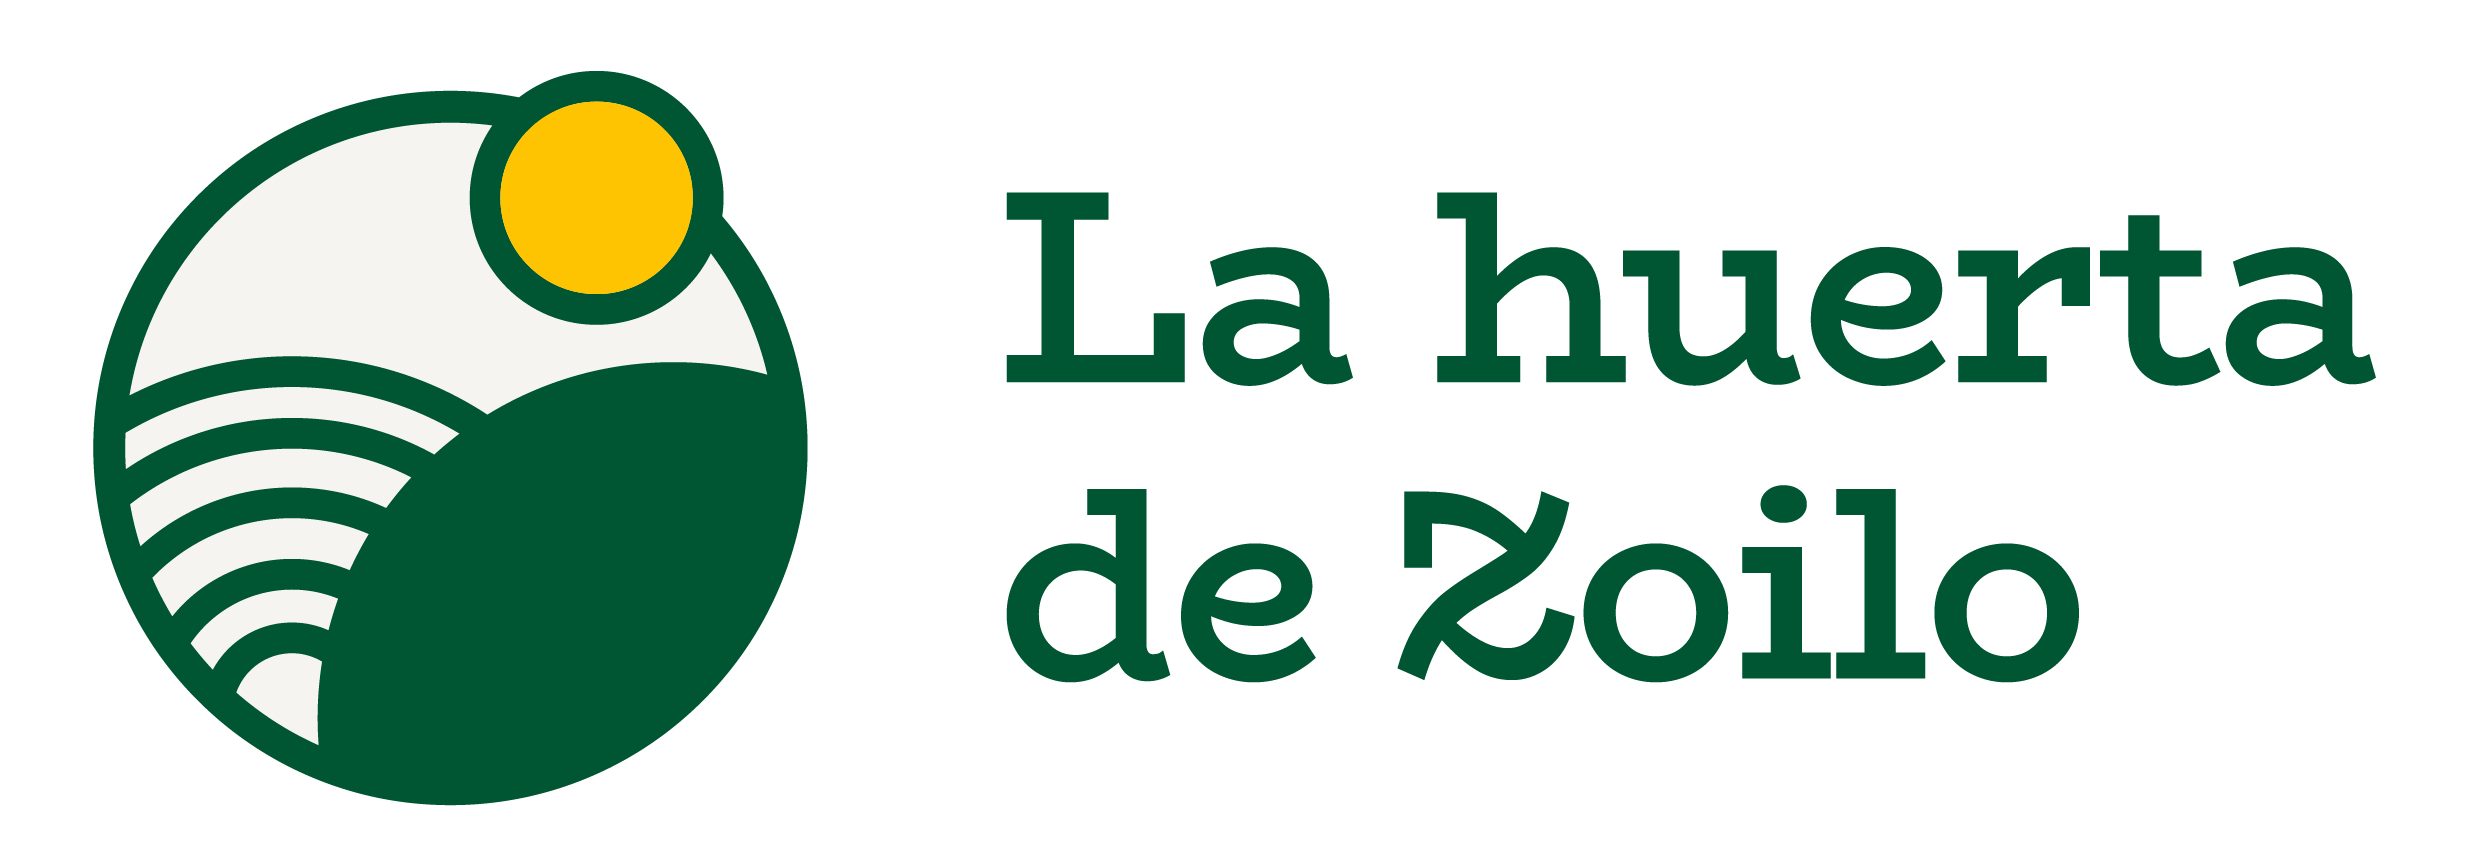 logo-texto-horizontal